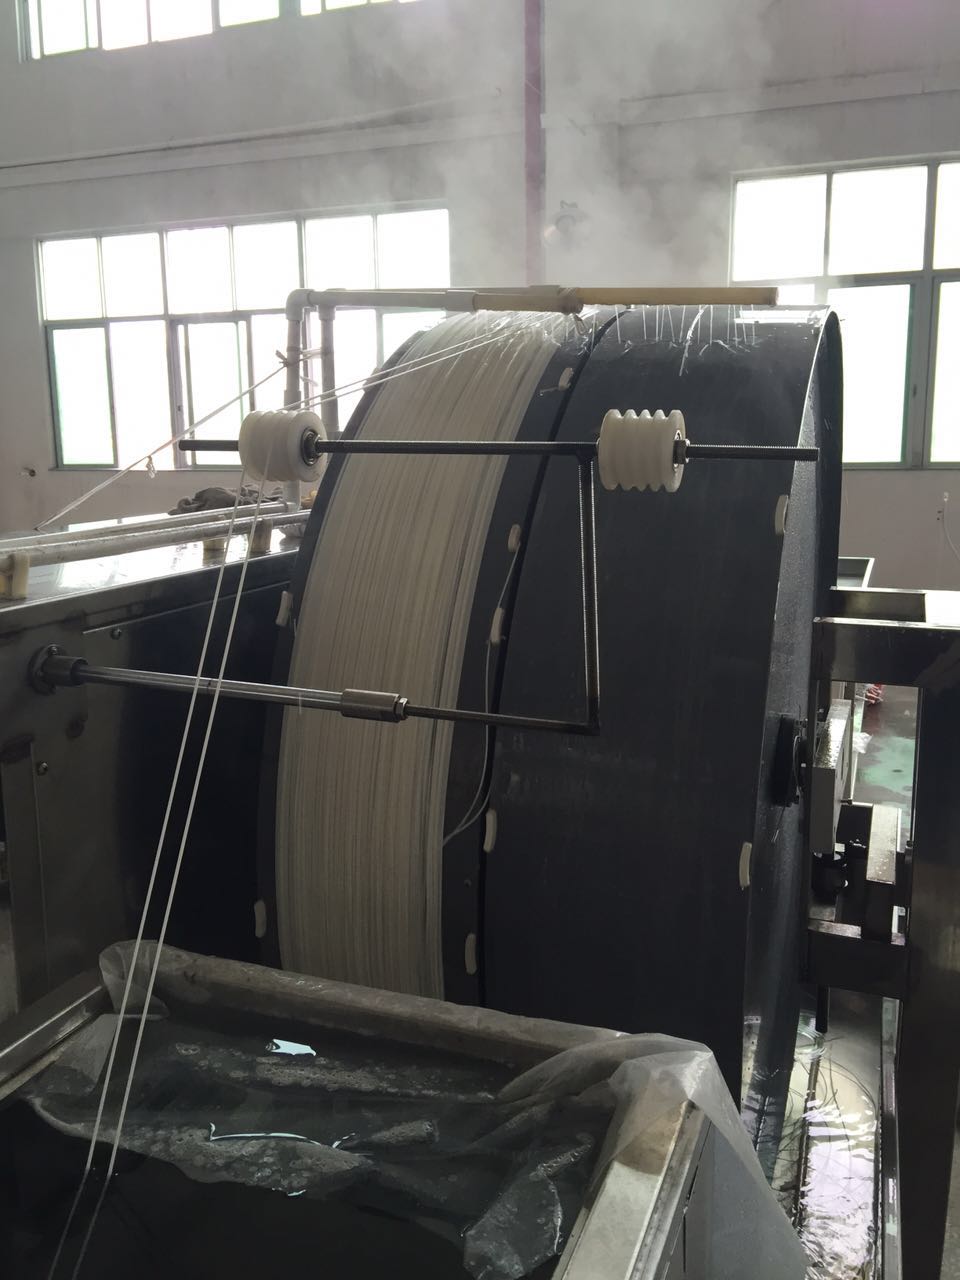 Bangmo Technology Co., Ltd. компаниясынын жаңы ультра фильтрациялык мембрана ийирүү фабрикасы Чжуншан шаарындагы Шенван шаарында бүткөрүлүп, пайдаланууга берилди.